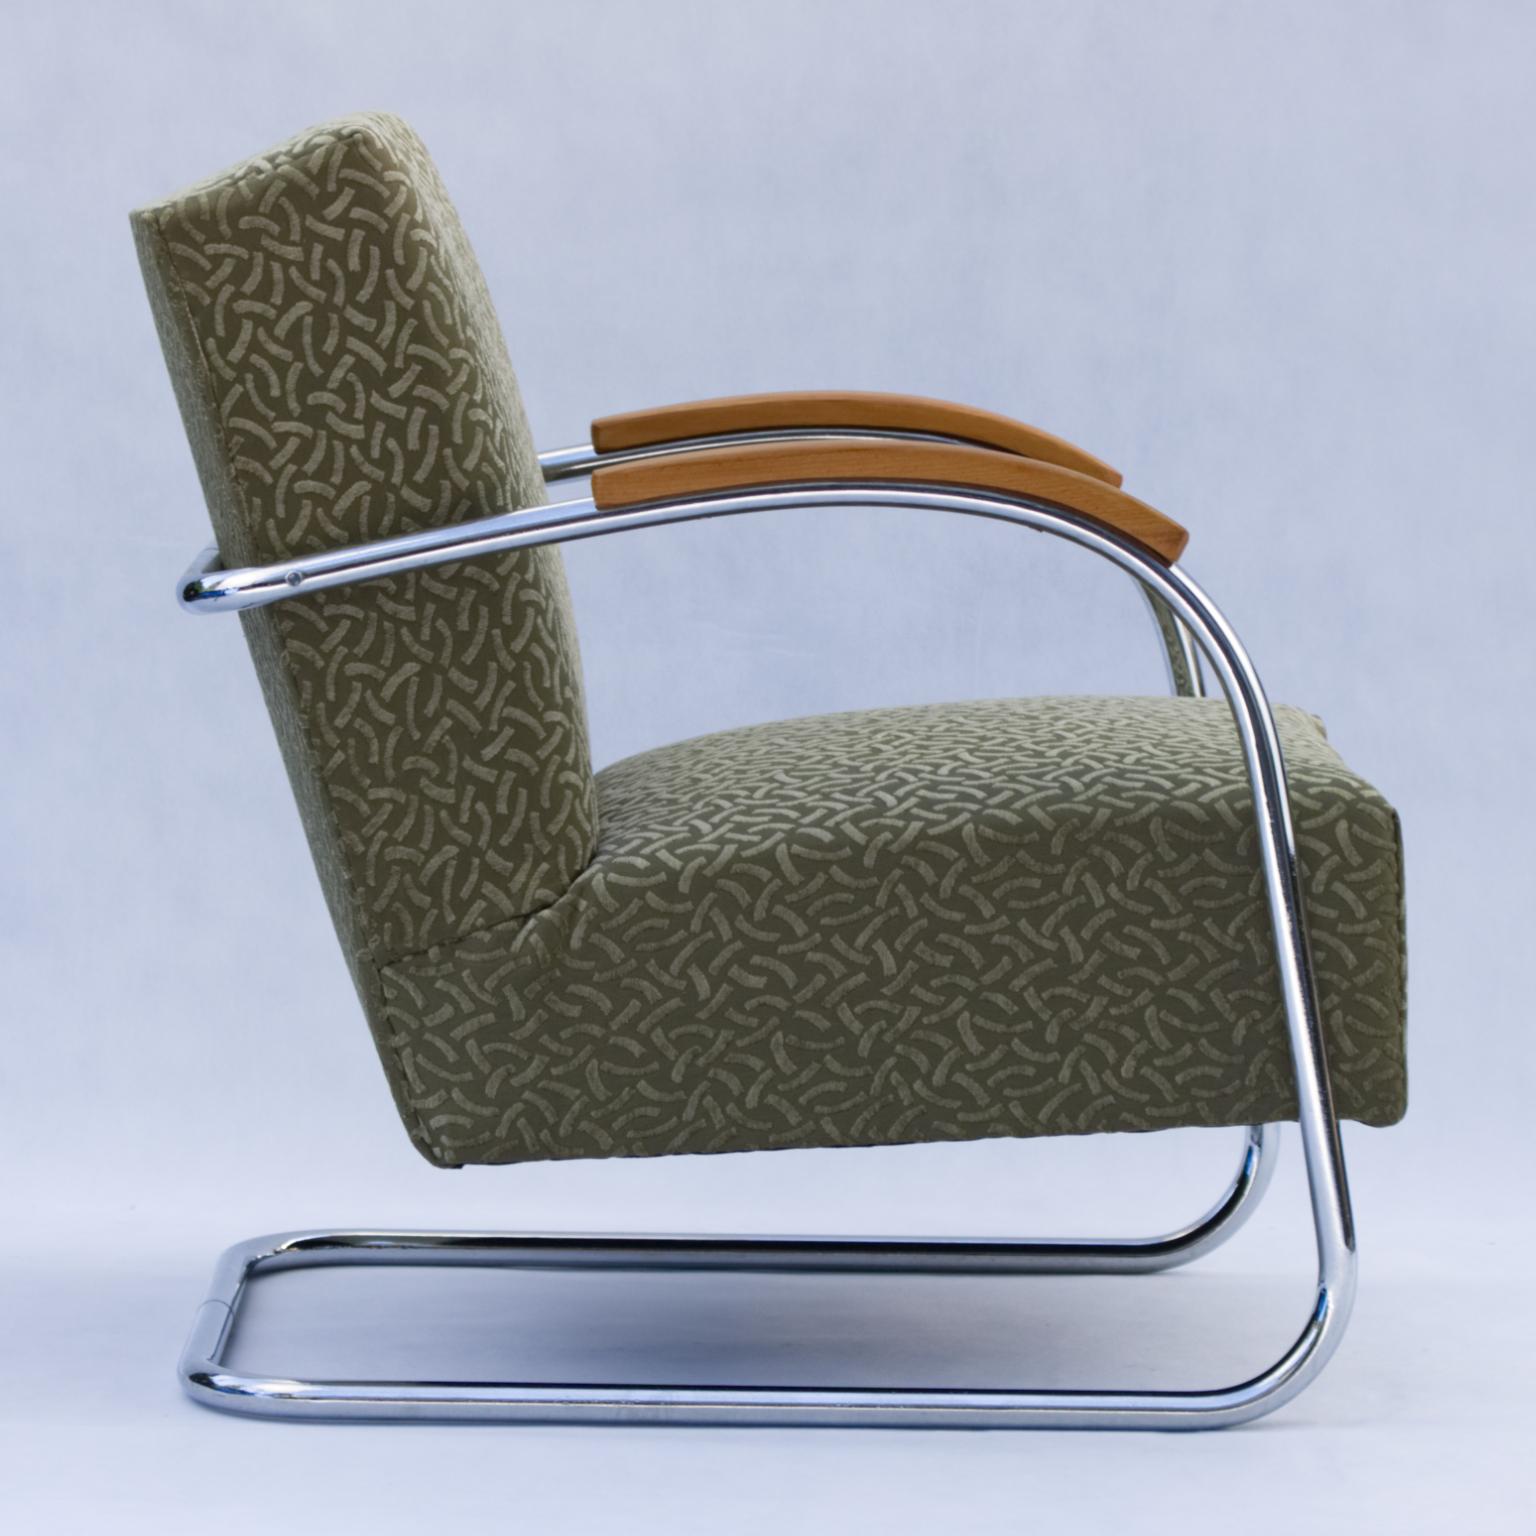 Ce fauteuil Bauhaus a été produit dans les années 1930 par Mücke & Melder Czechoslovakia.
Nouvelle sellerie et nouveaux chromes.